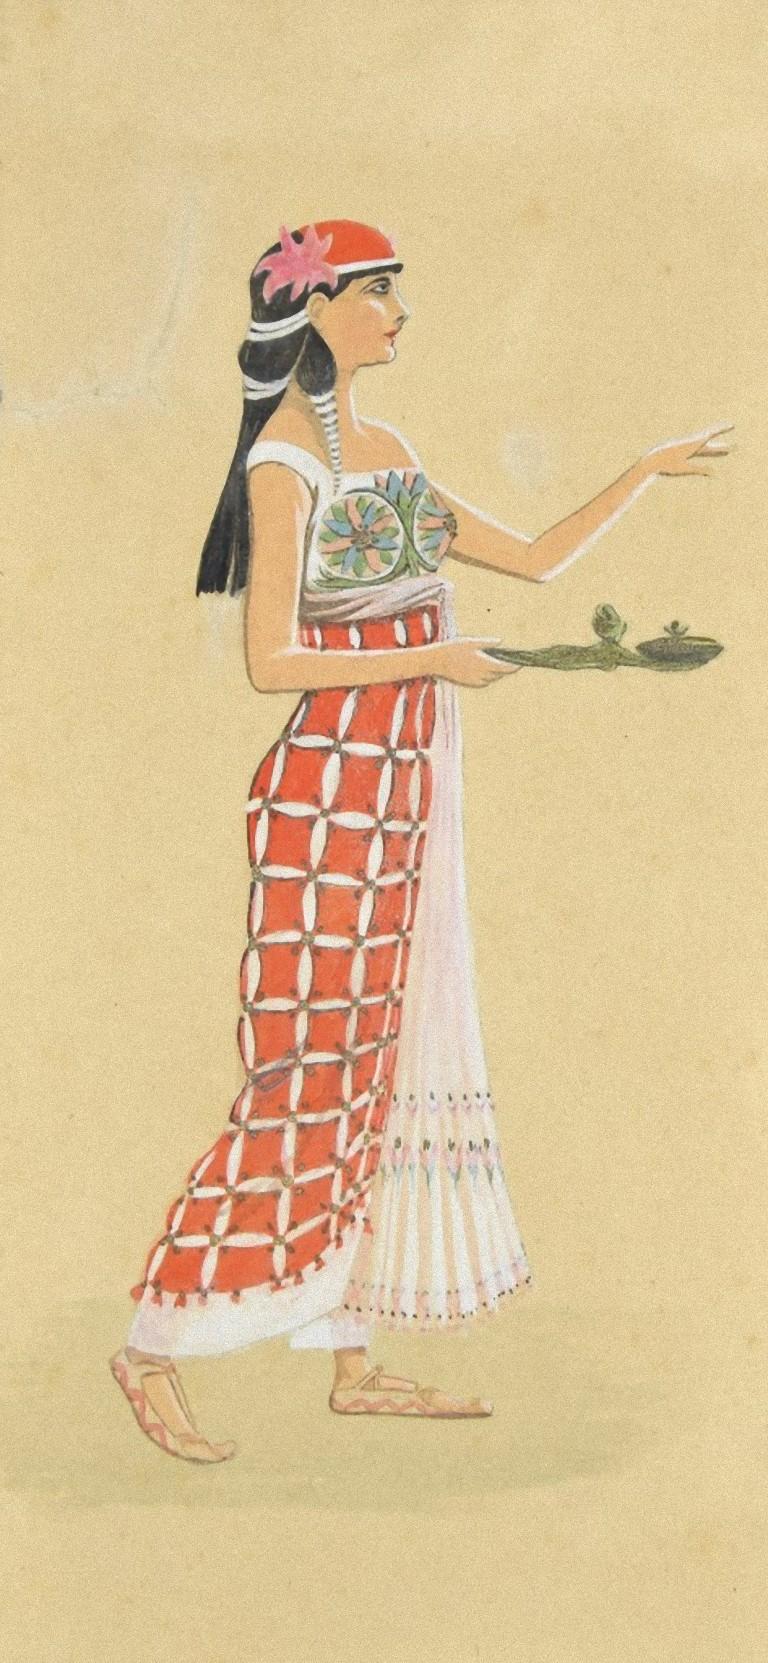 Woman Figure ist eine Originalzeichnung in Mischtechnik, Tusche, Tempera und Aquarell auf elfenbeinfarbenem Papier von M. Molinari aus dem Jahr 1920.

Nicht unterzeichnet.

Der Erhaltungszustand der Kunstwerke ist gut.

Das Kunstwerk stellt einen